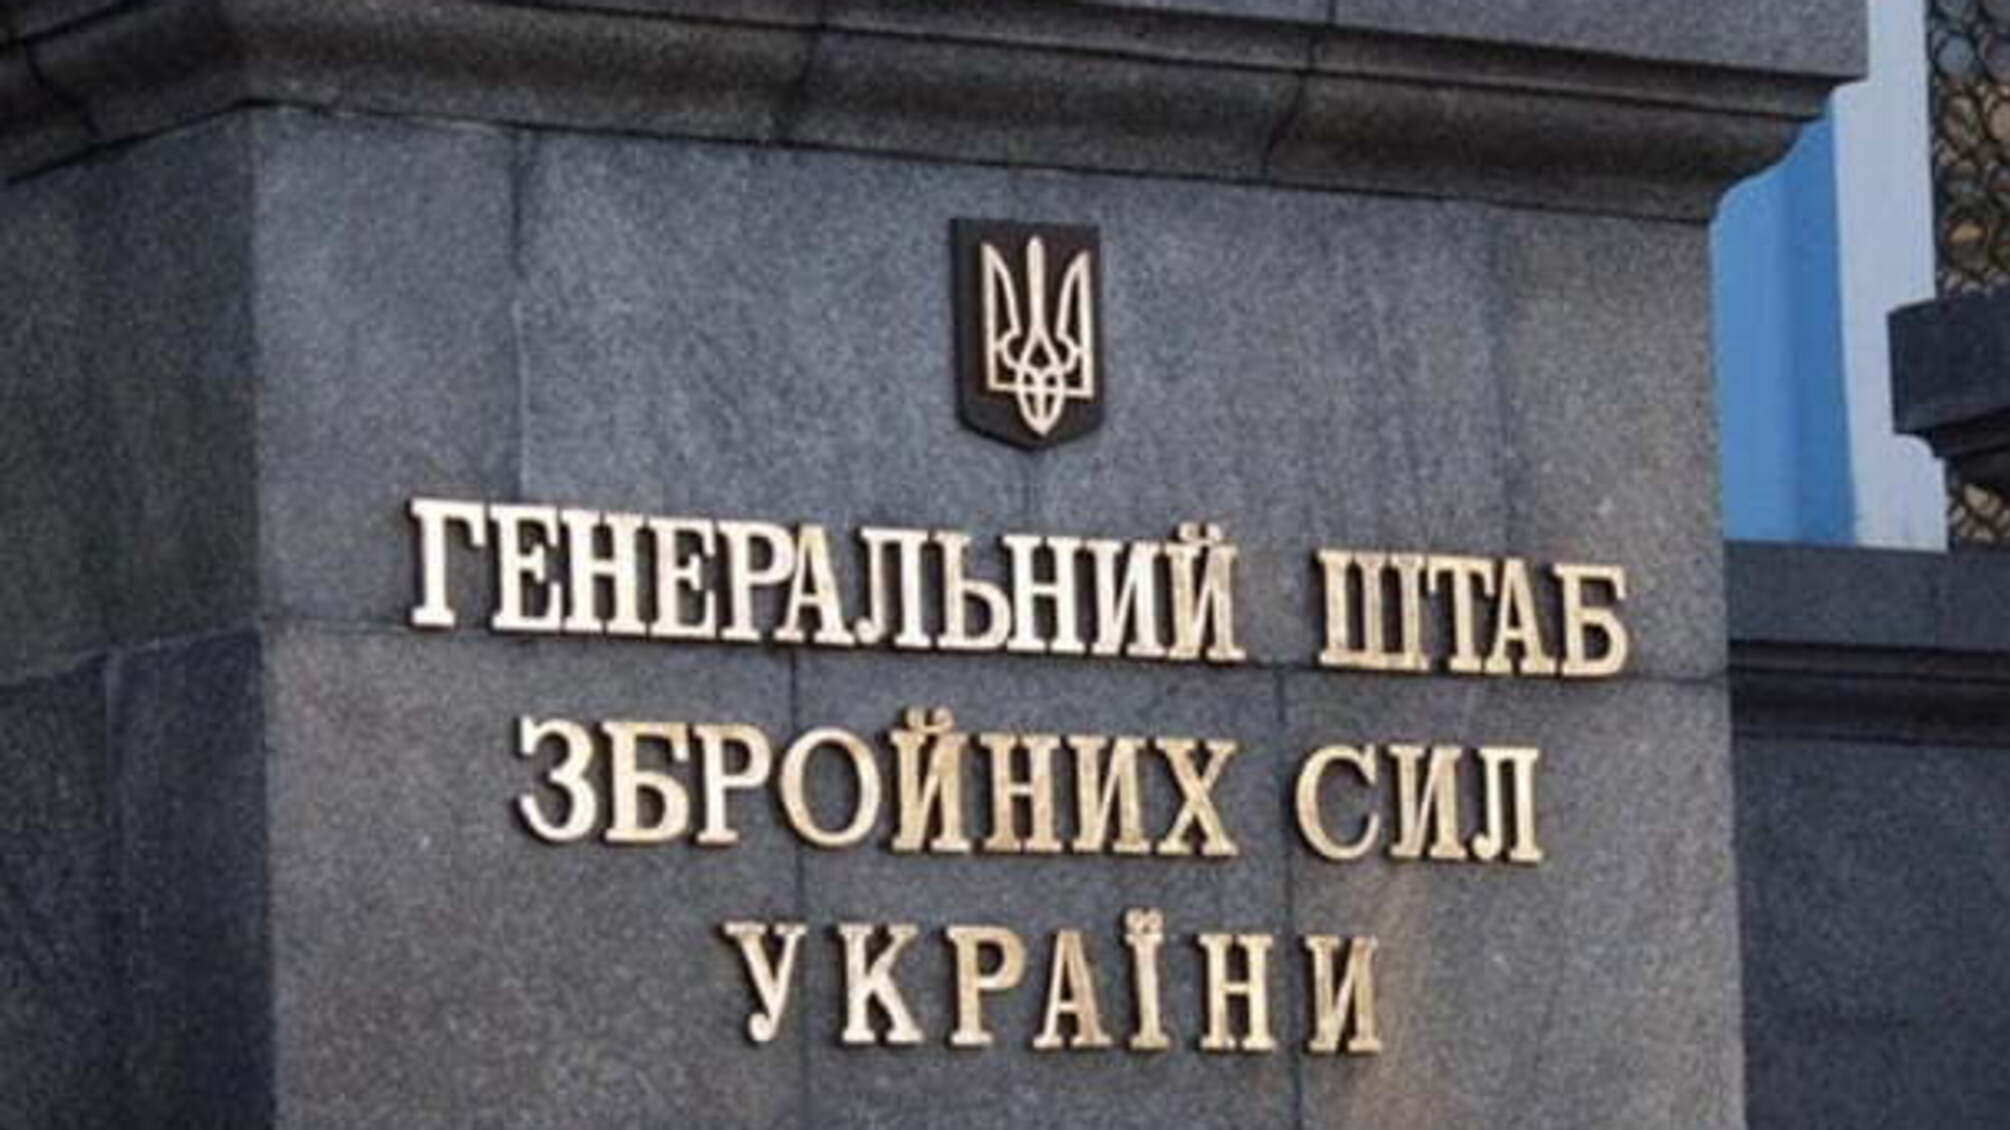 Генеральний штаб ЗСУ звернувся до жителів України у зв'язку з воєнним станом – подробиці